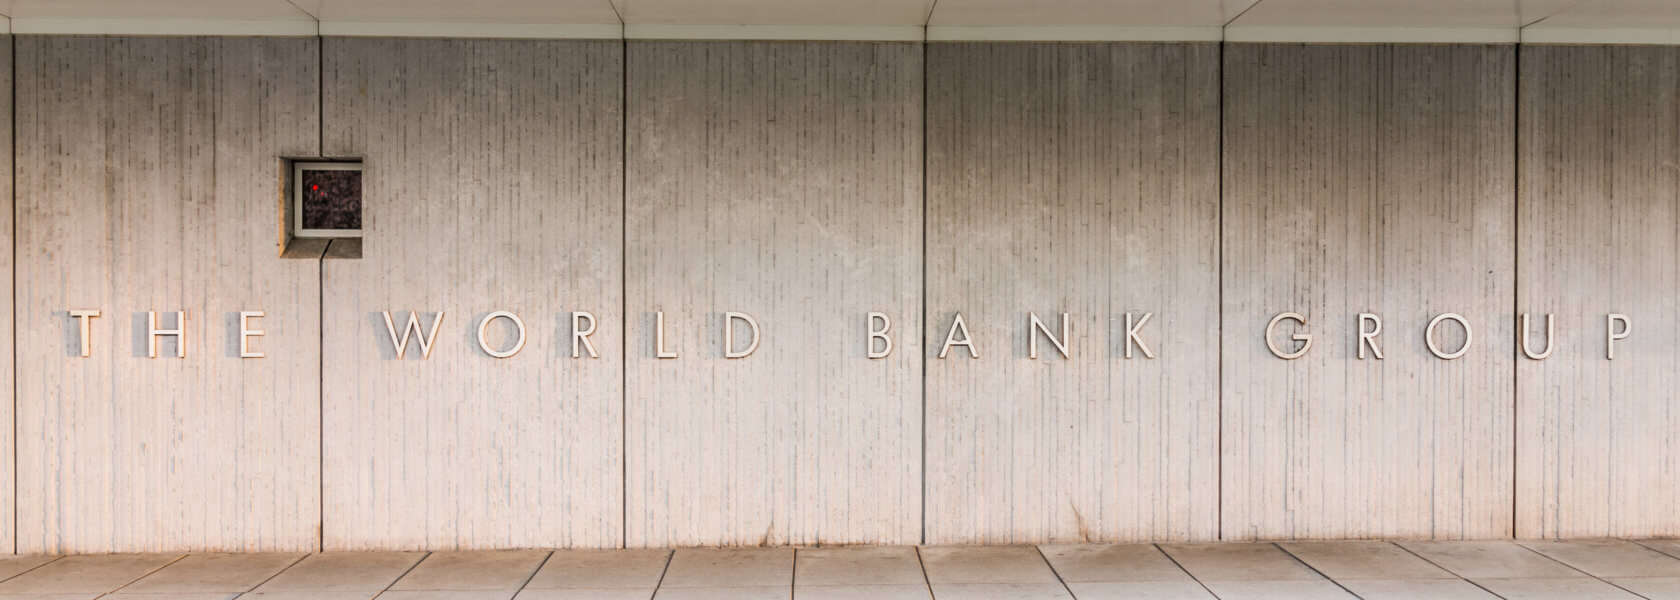 World Bank Group Africa Fellowship Programme